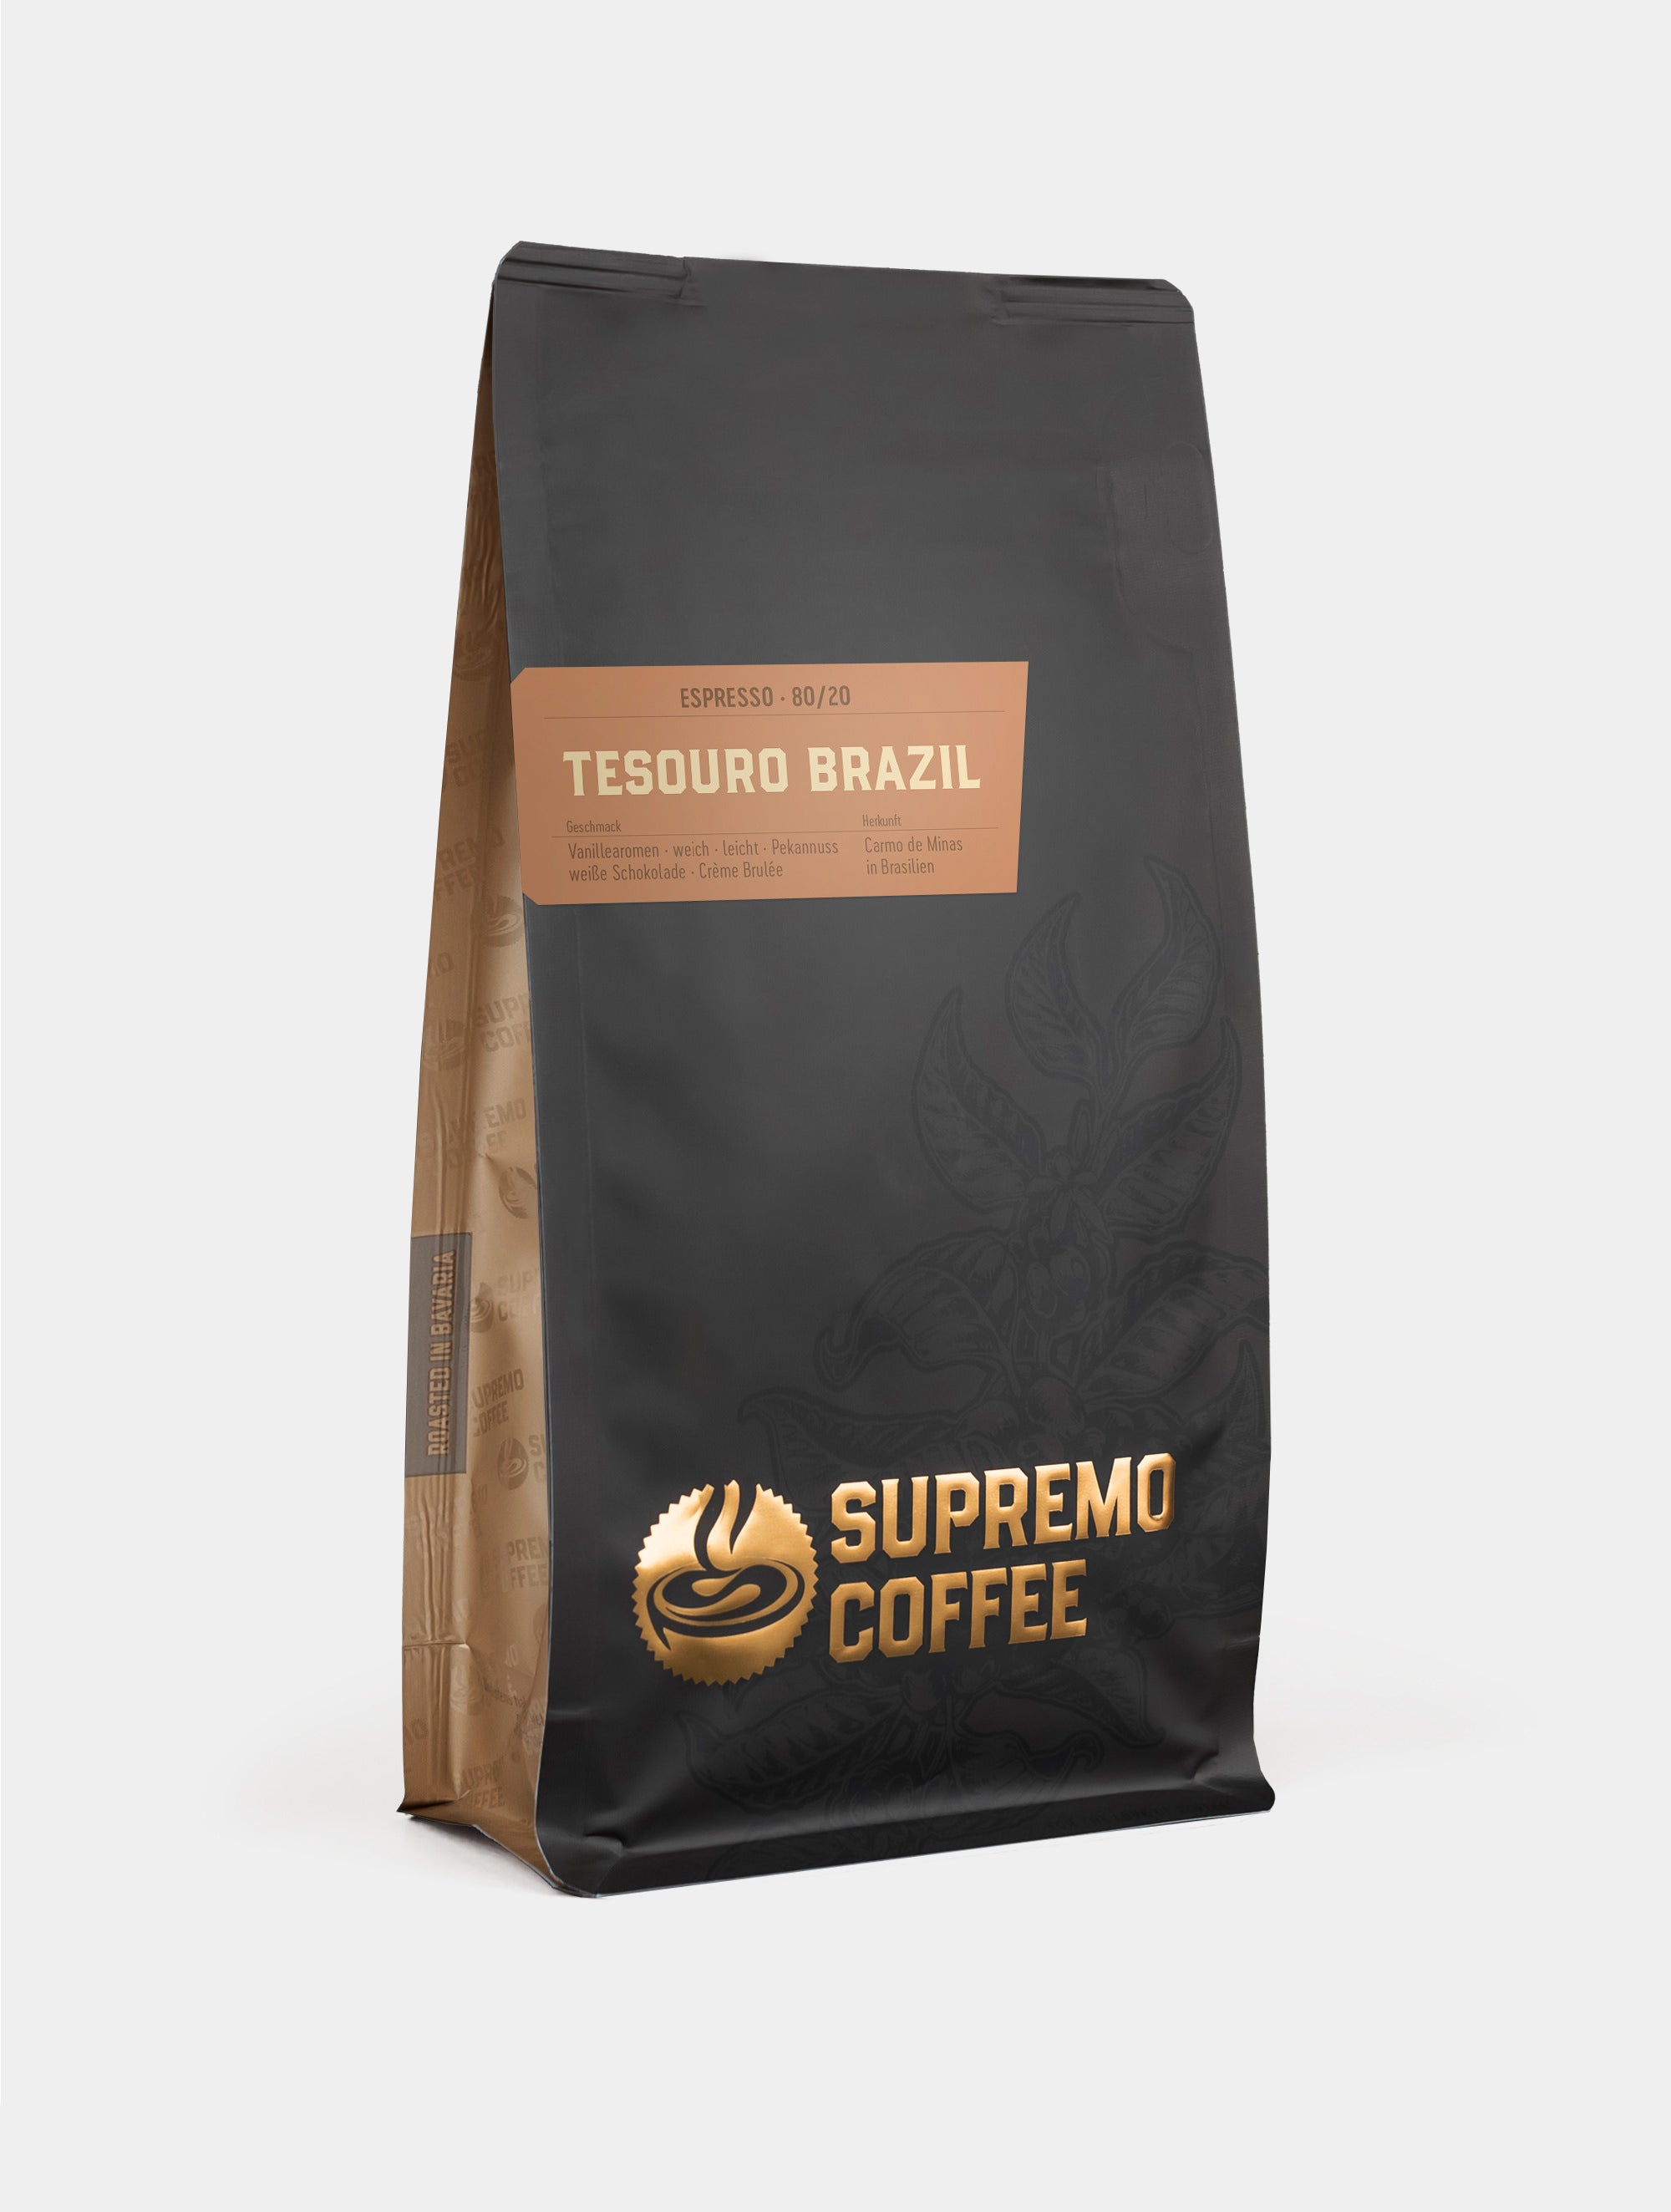 Tesouro Brazil, Espresso 80/20 | SUPREMO Coffee